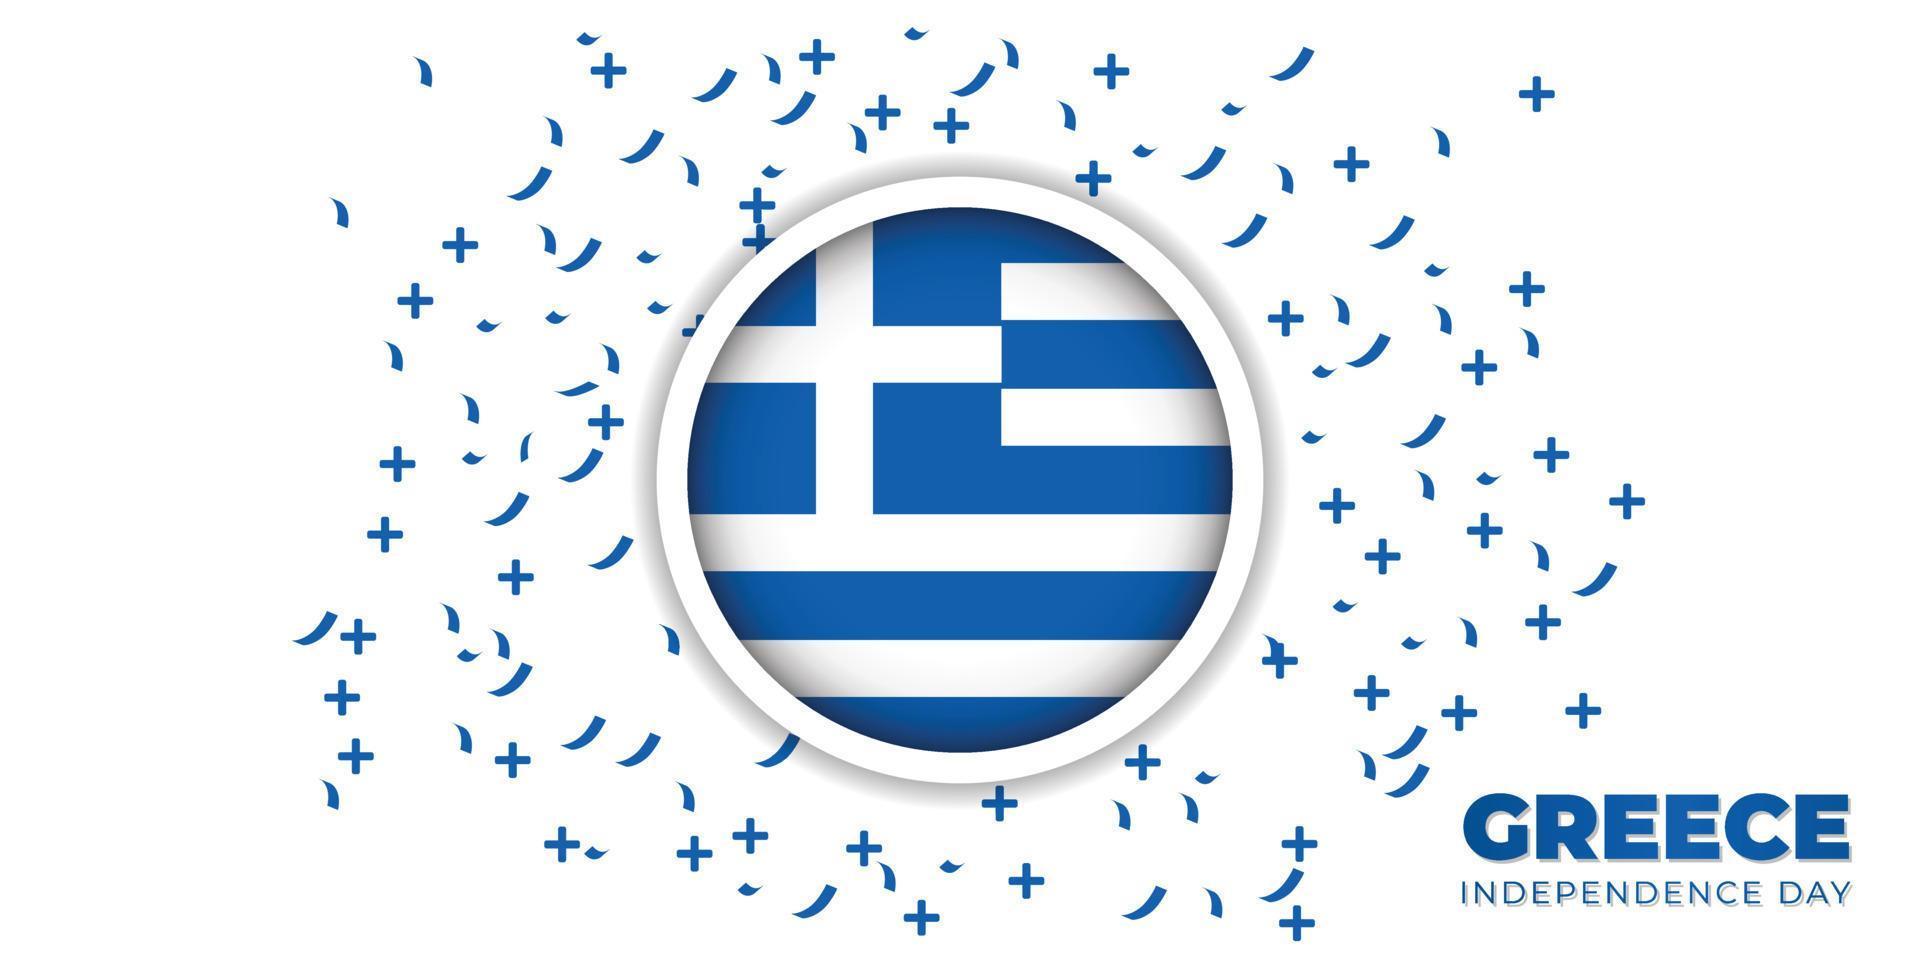 Greece Emblem flag vector illustration.